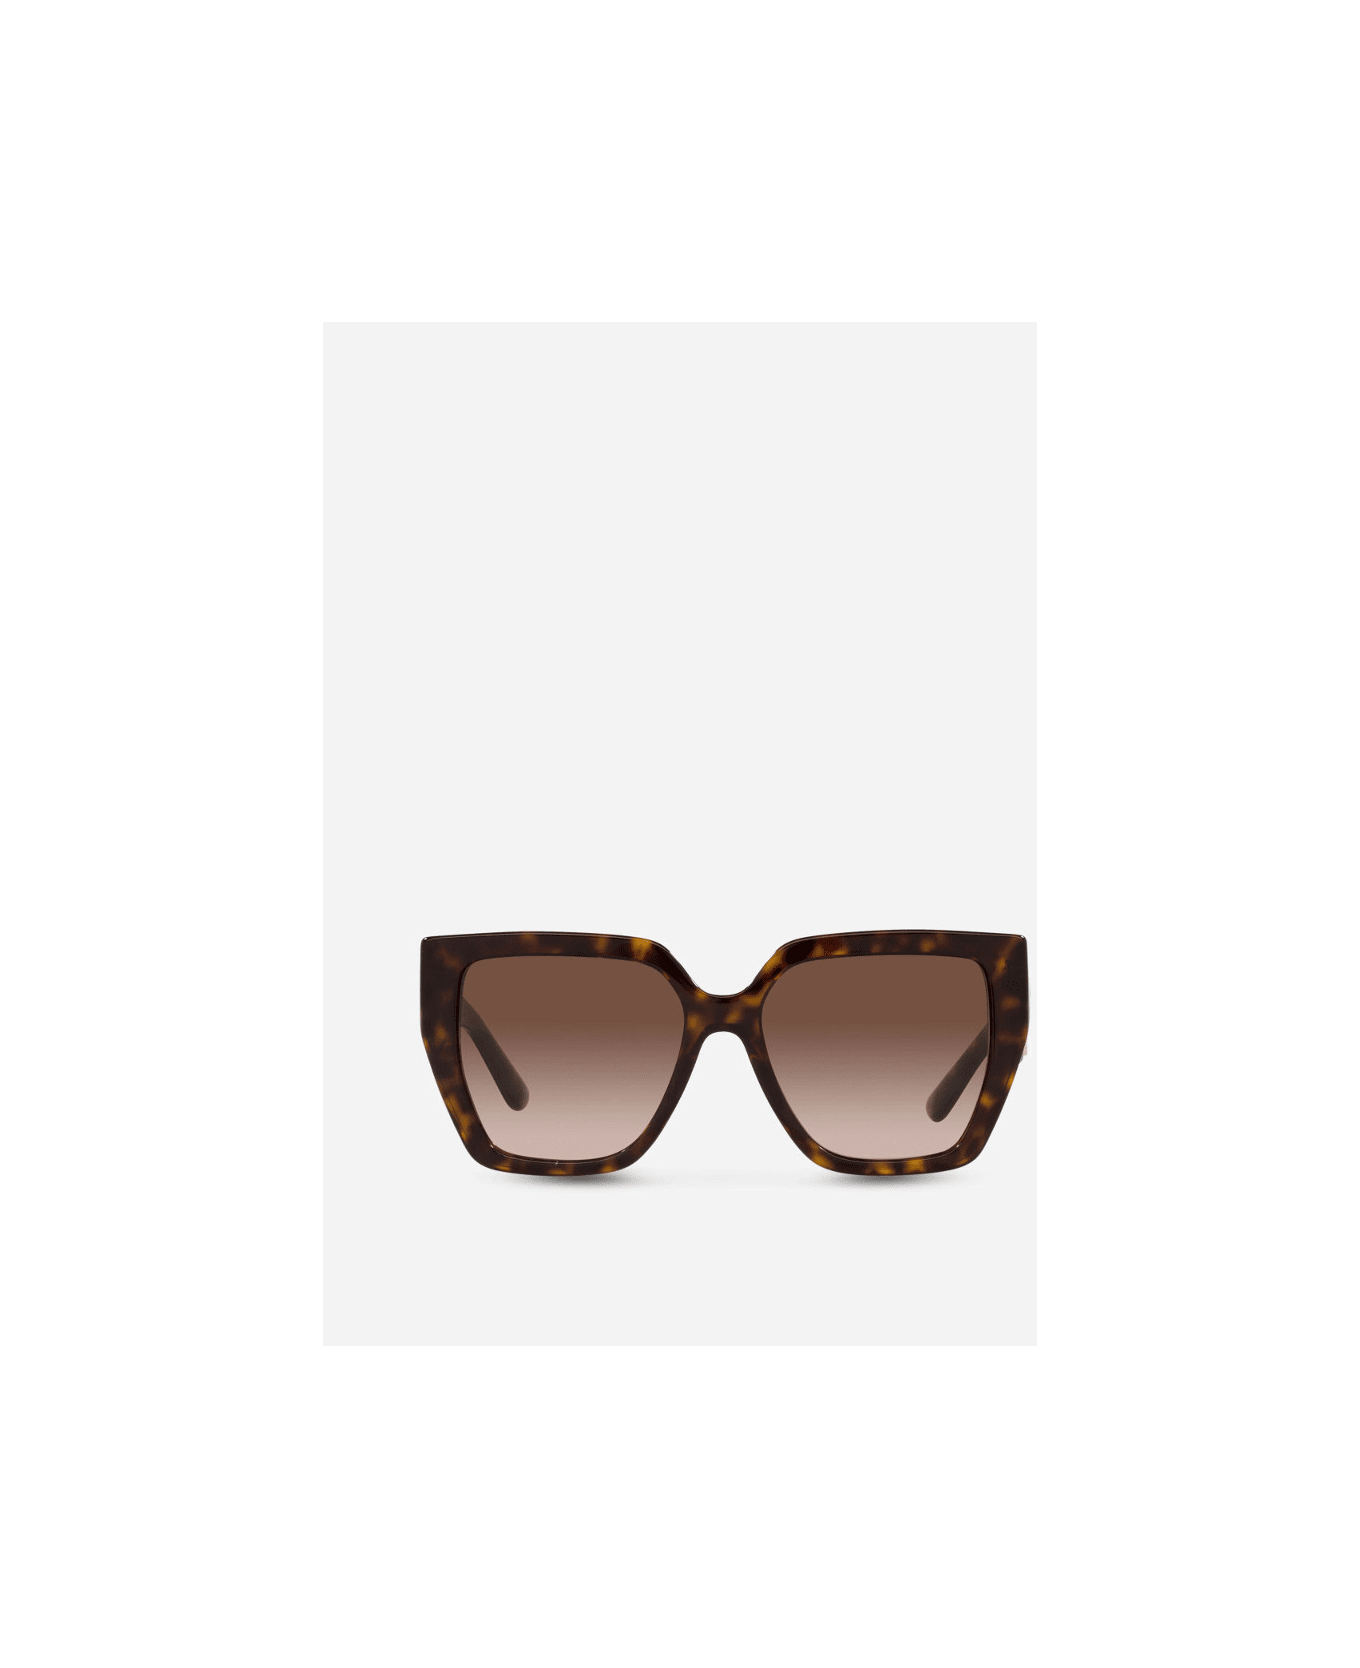 Dolce & Gabbana Eyewear DG4438s 502/13 Sunglasses - Tartarugato サングラス